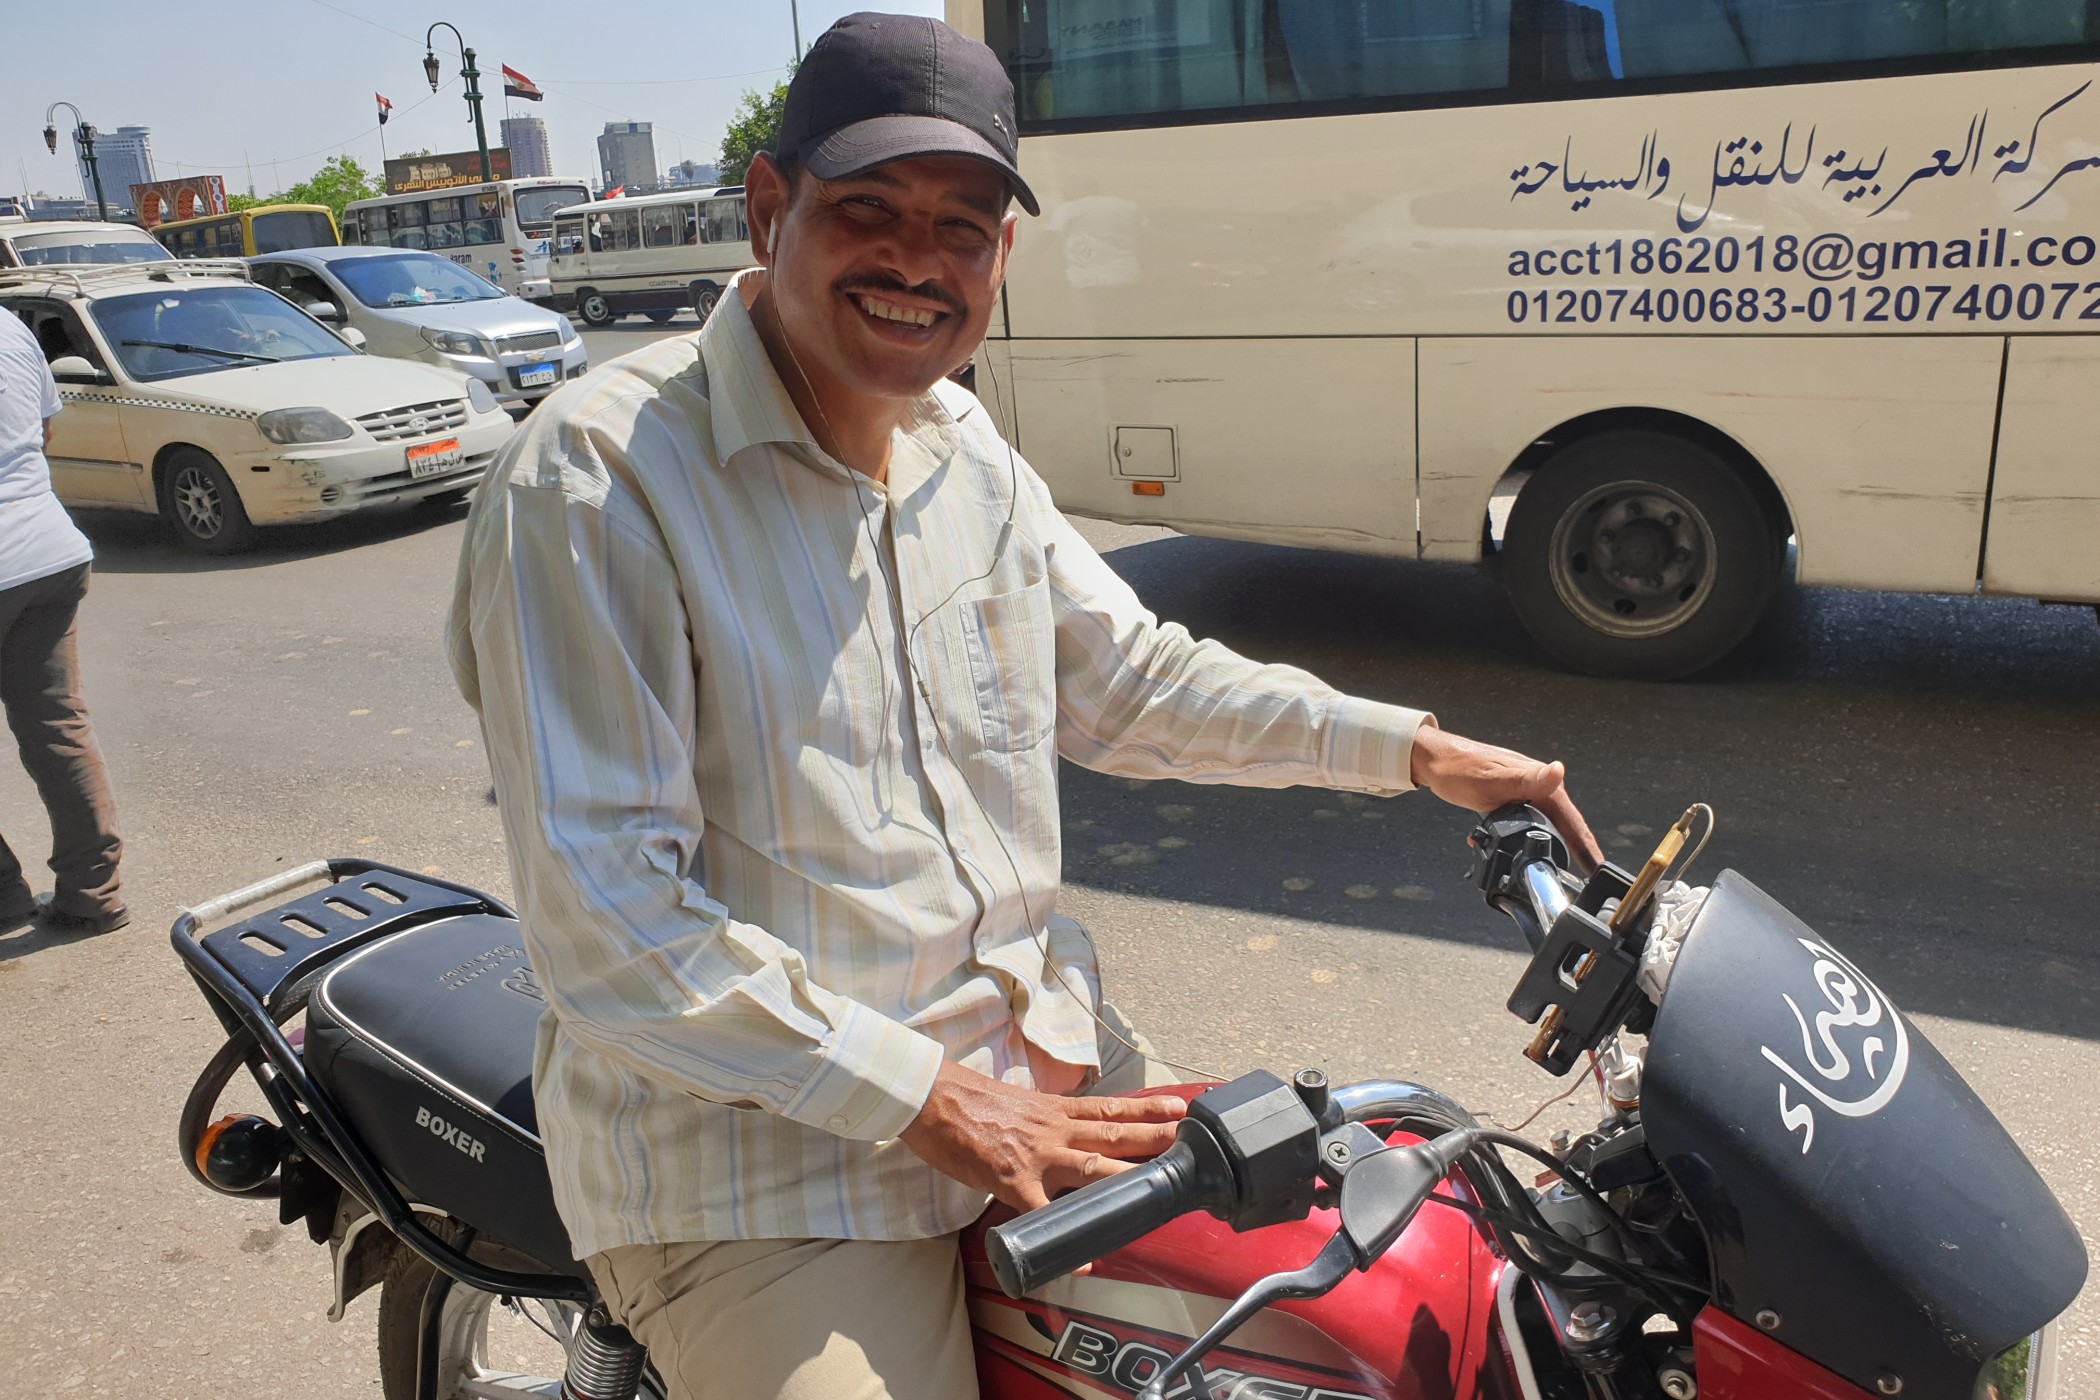 Mahmúd pracoval dřív jako truhlář, ale taxikaření na motorce ho prý uživí líp